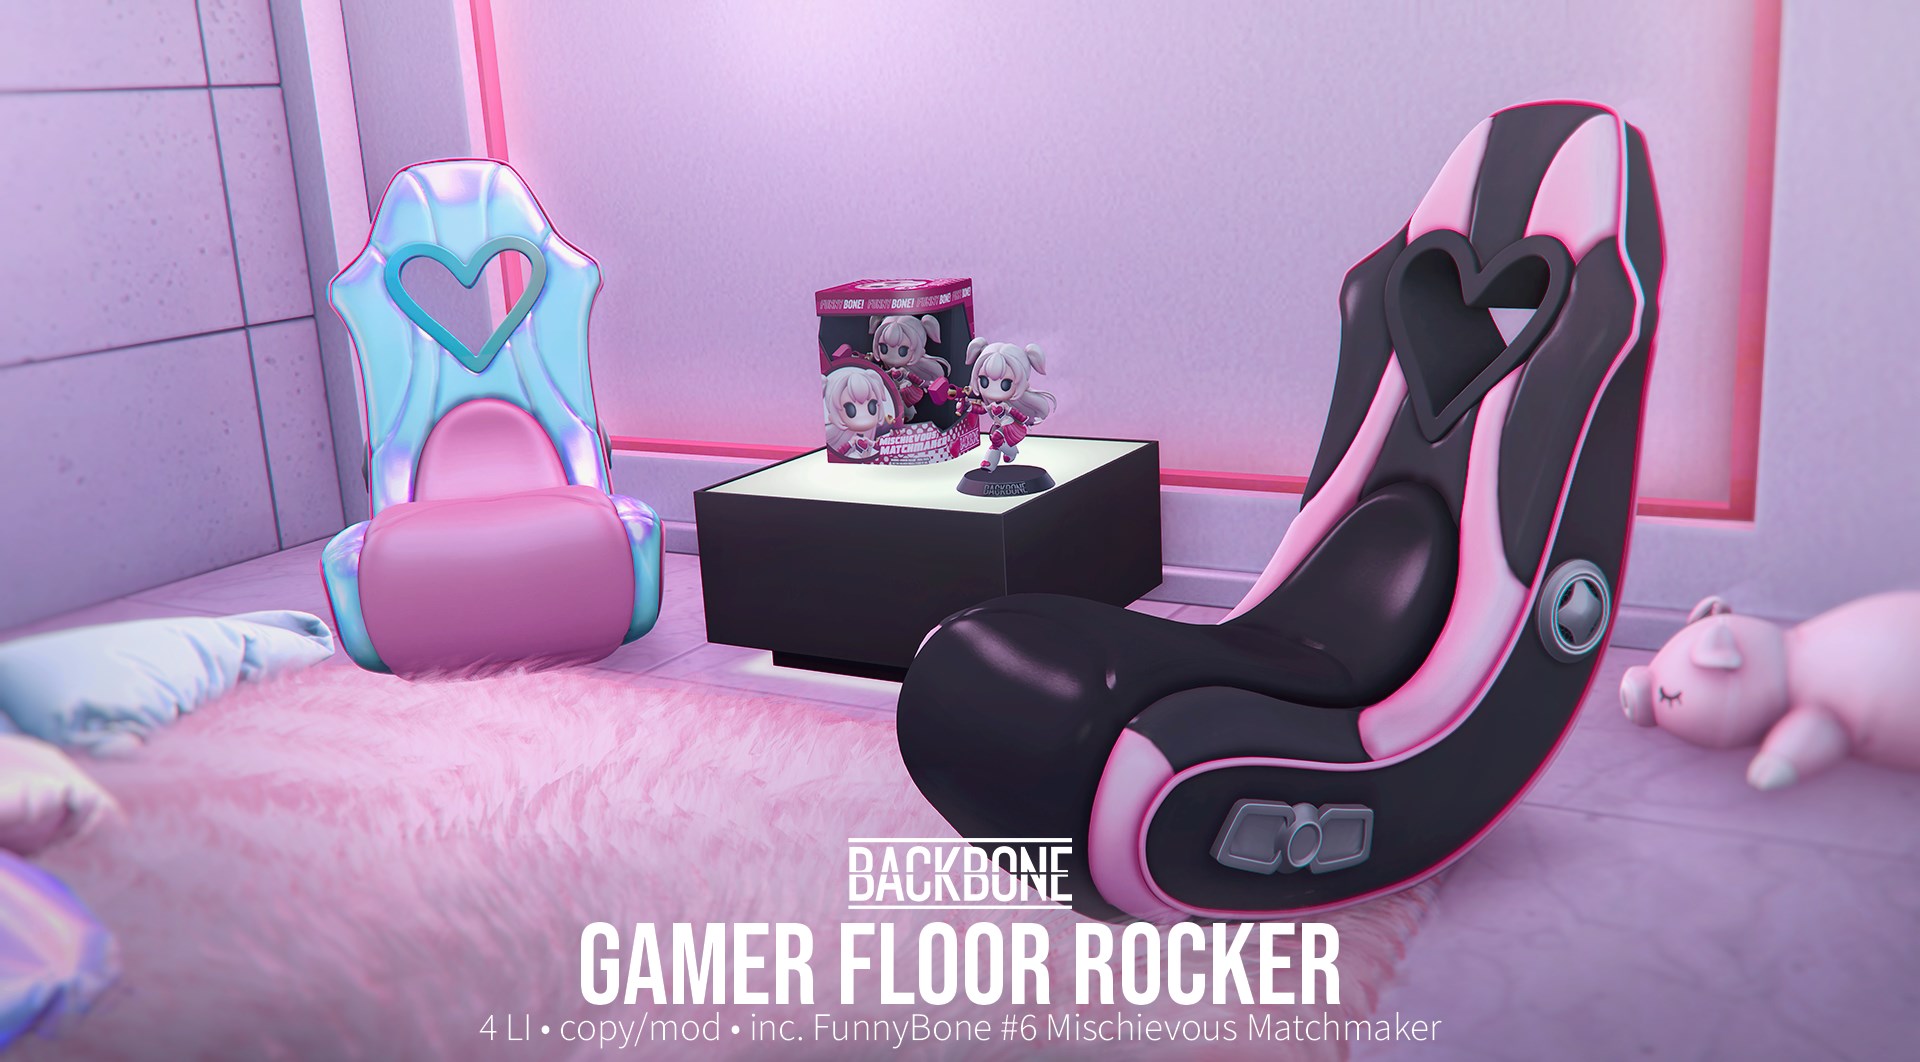 BackBone – Gamer Floor Rocker